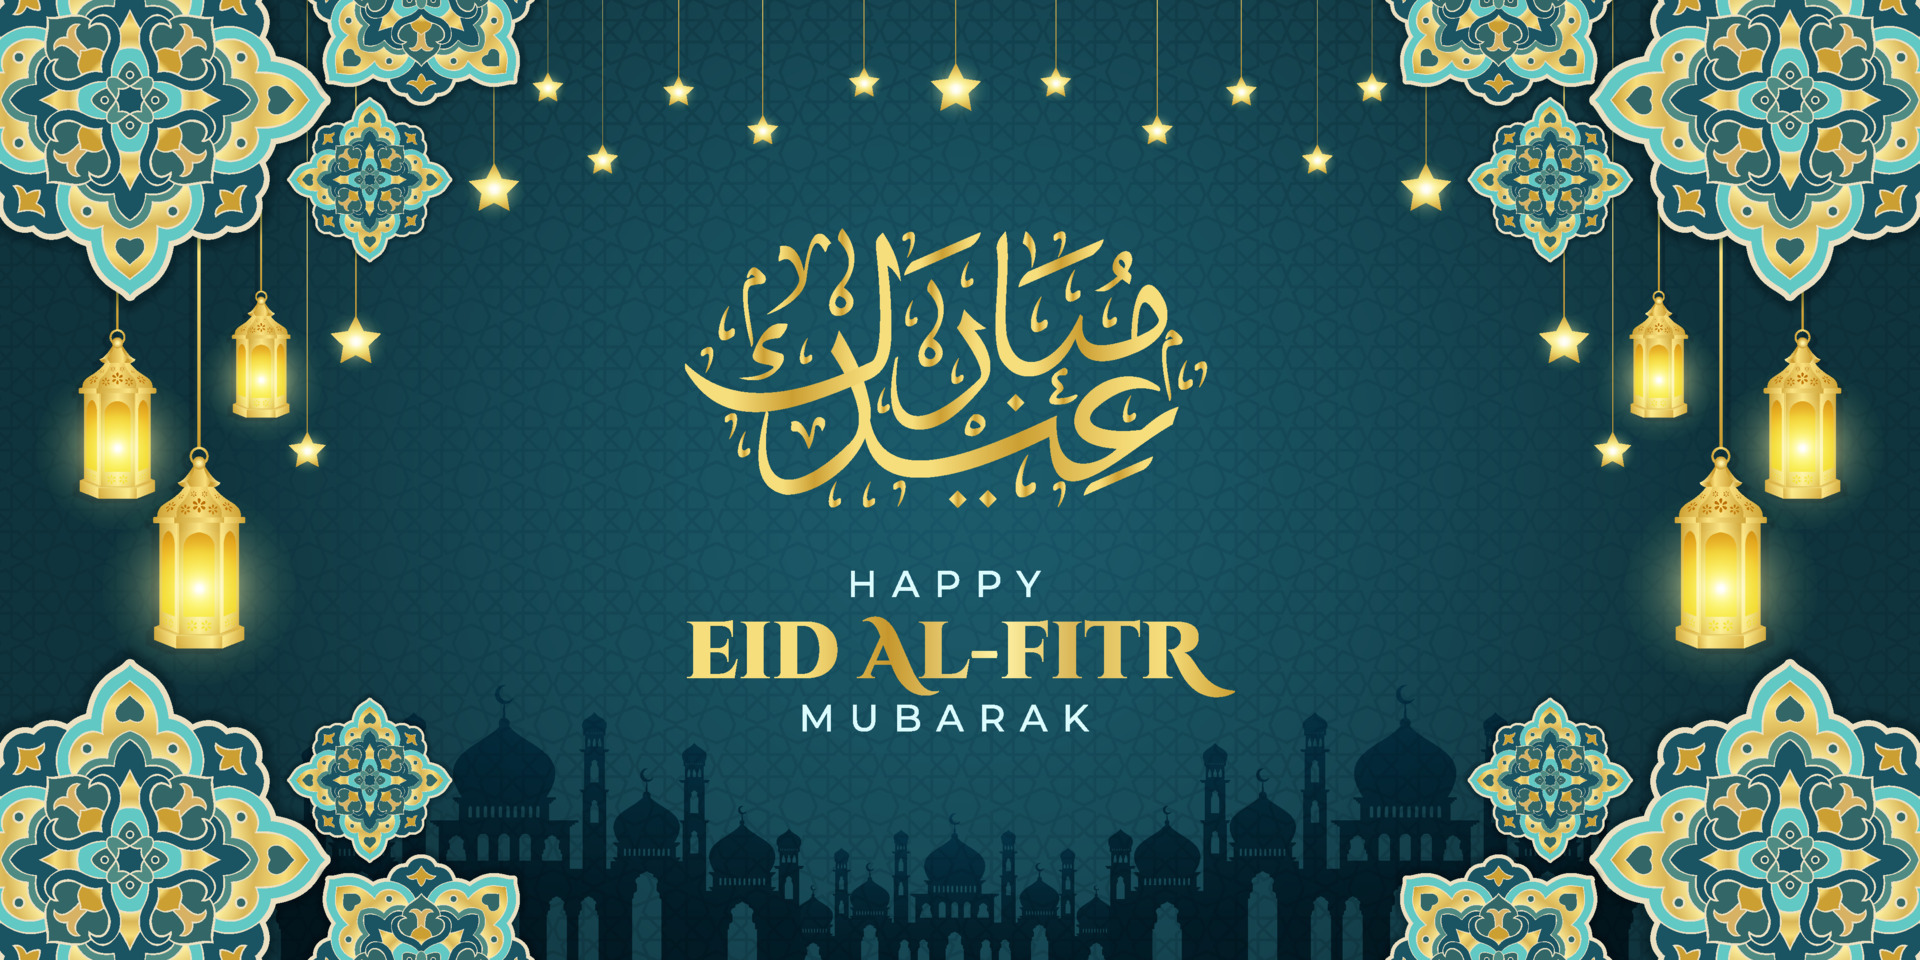 Eid al fitr mubarak greeting, Islamic ornament template for ...